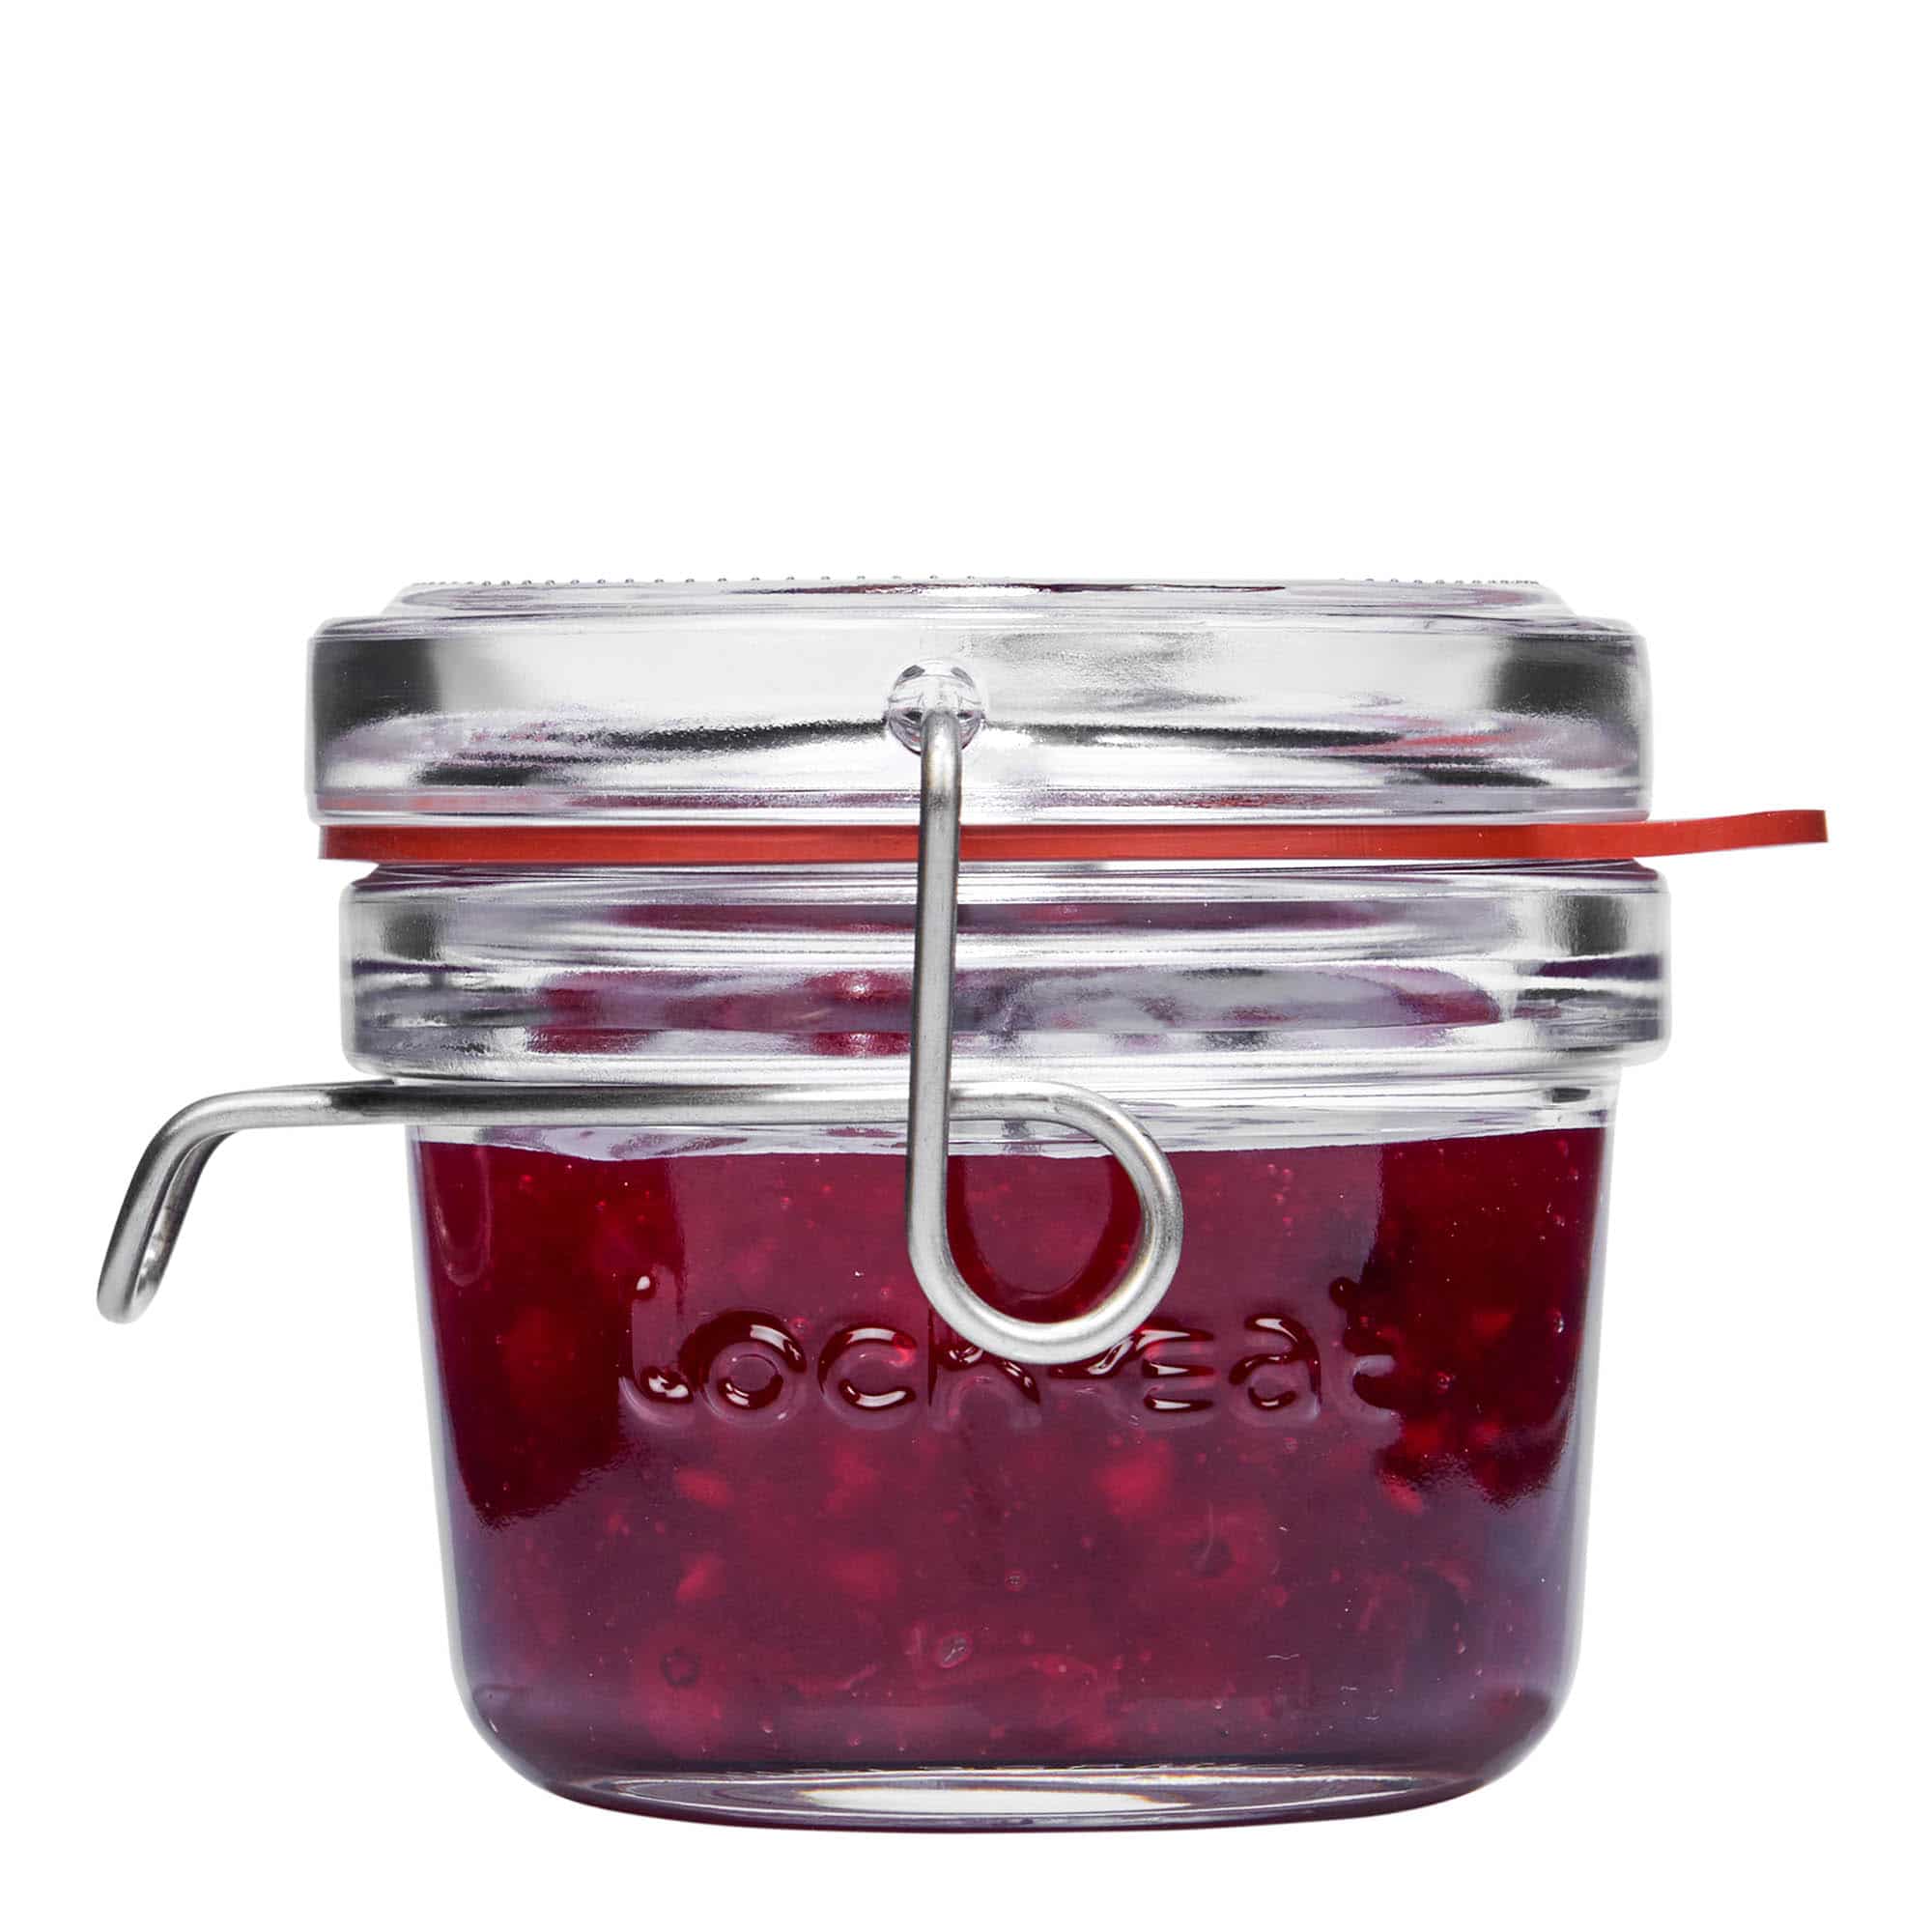 125 ml clip top jar 'Lock-Eat', closure: clip top